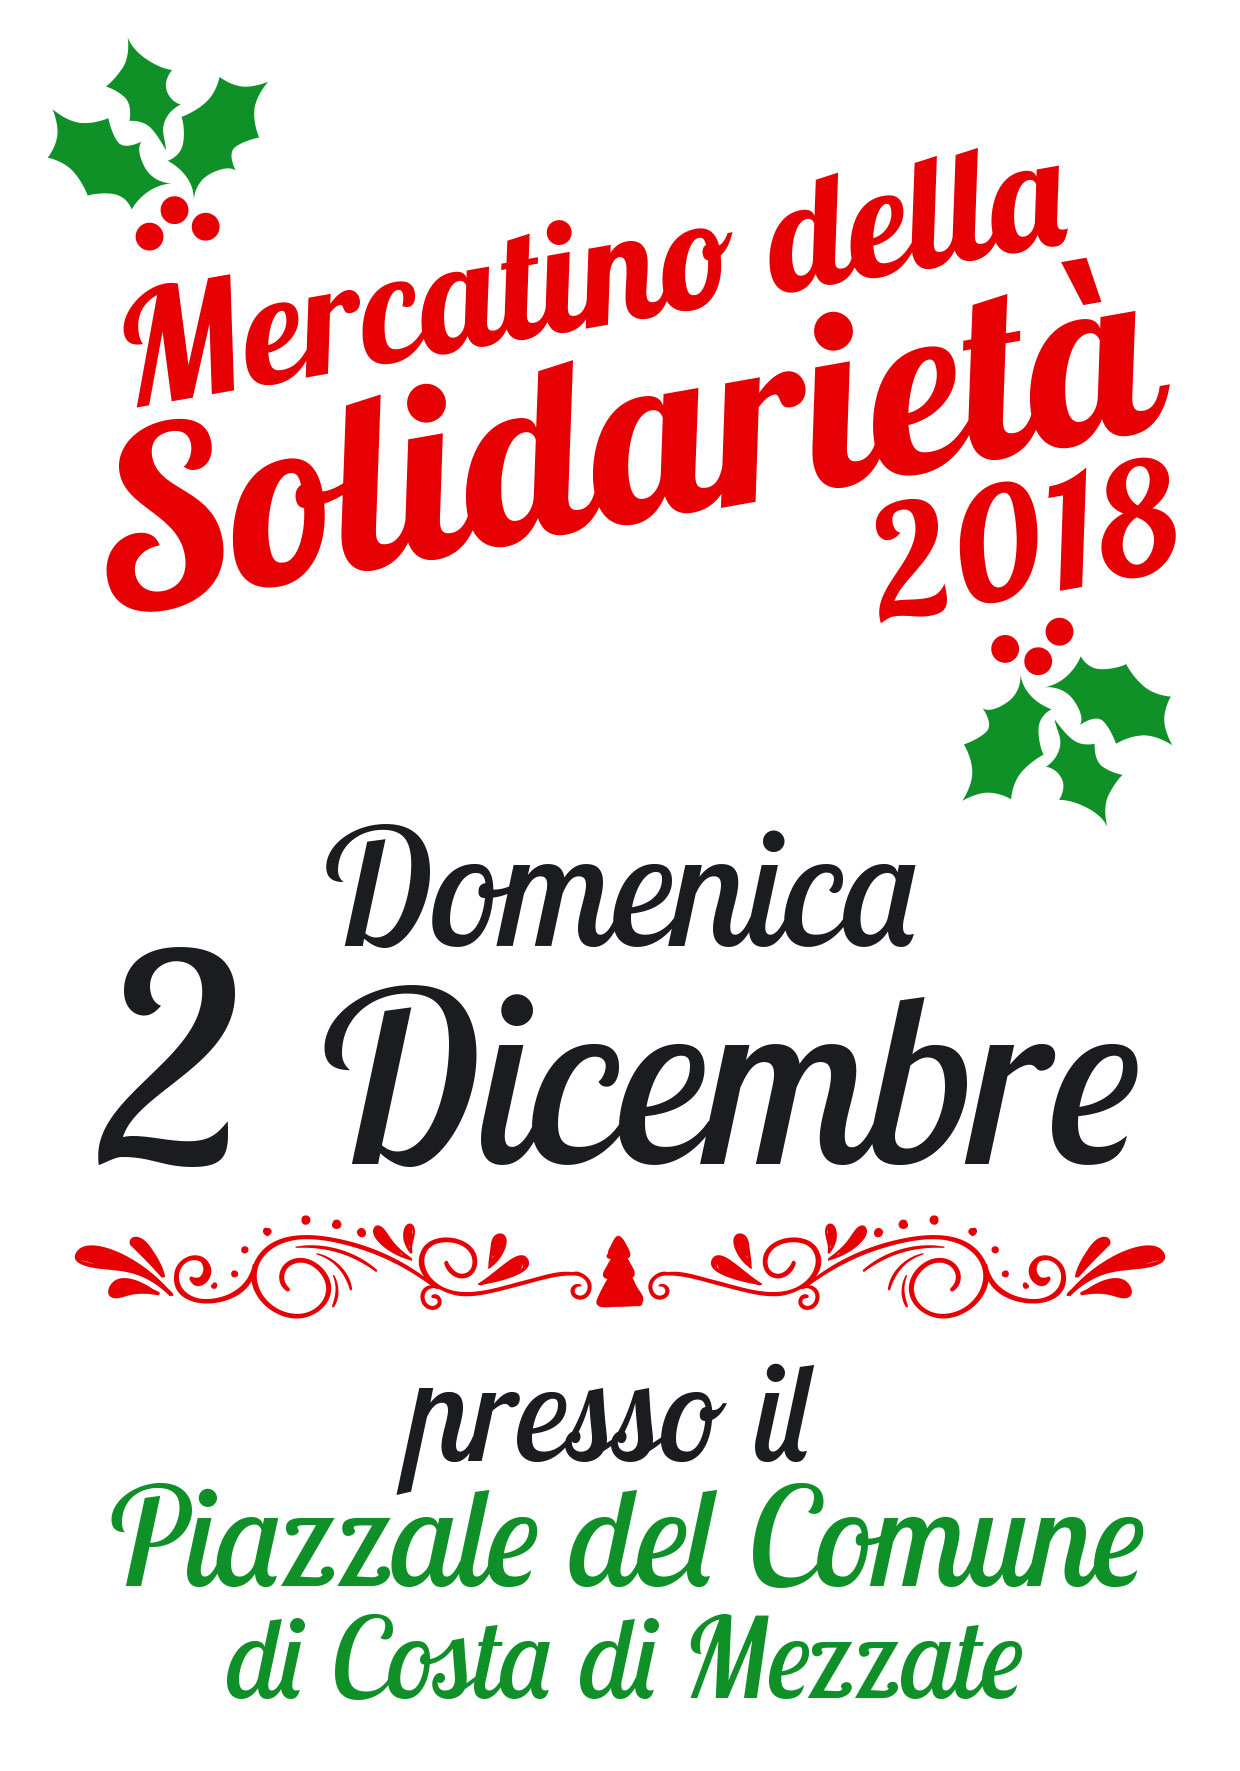 Immagine che raffigura Domenica 2 Dicembre - Bancarelle della solidarietà 2018